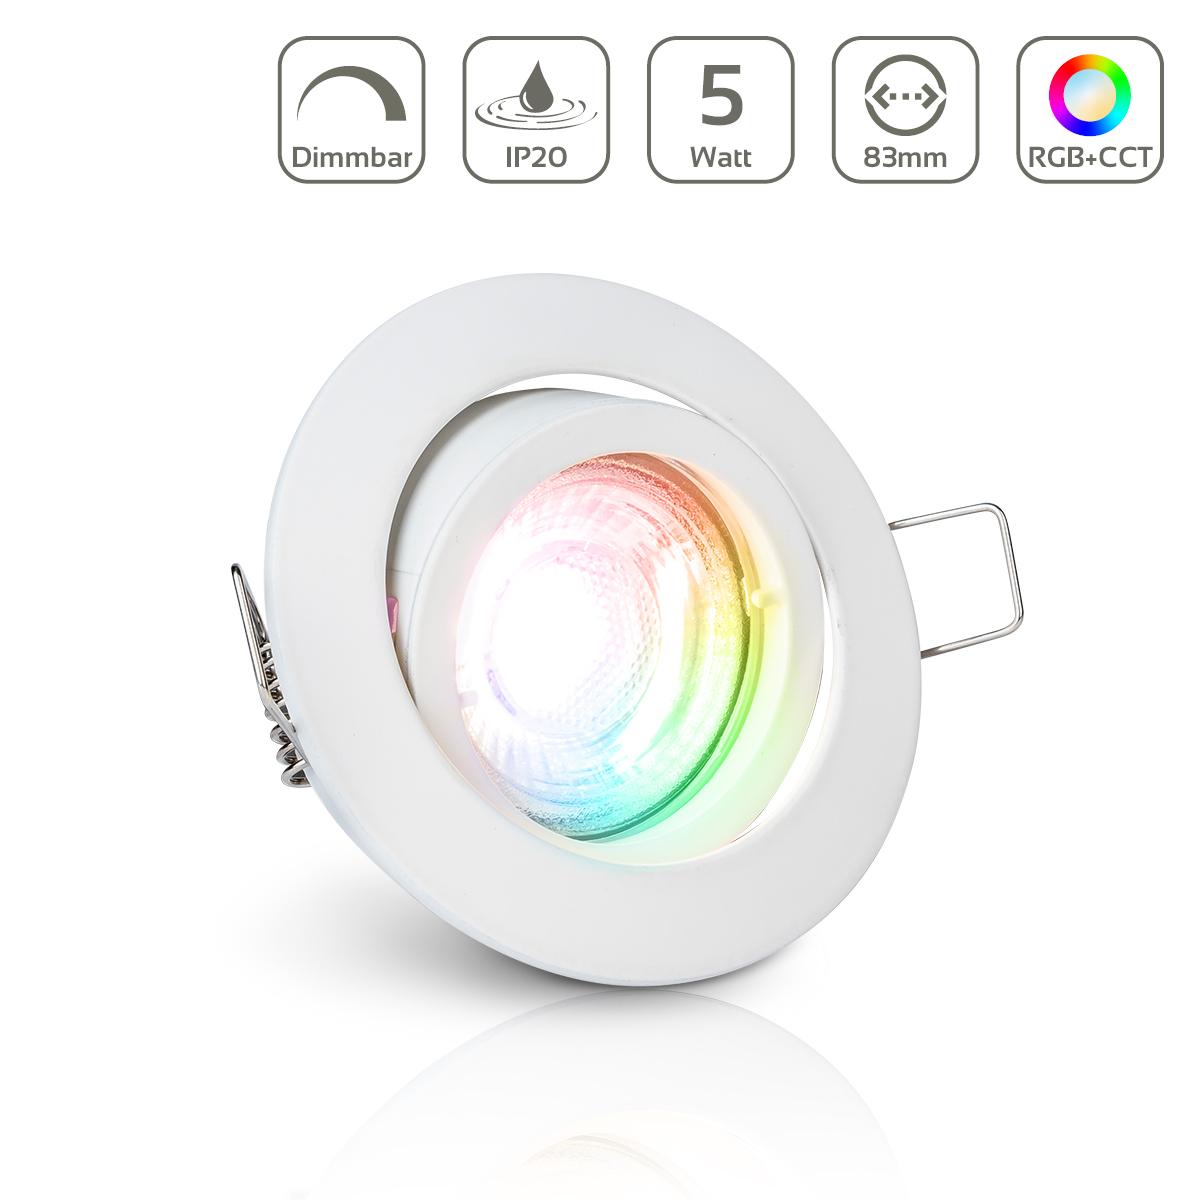 Einbauspot IP20 rund Bajonettverschluss - Farbe: weiß - LED Leuchtmittel: GU10 5W RGB+CCT